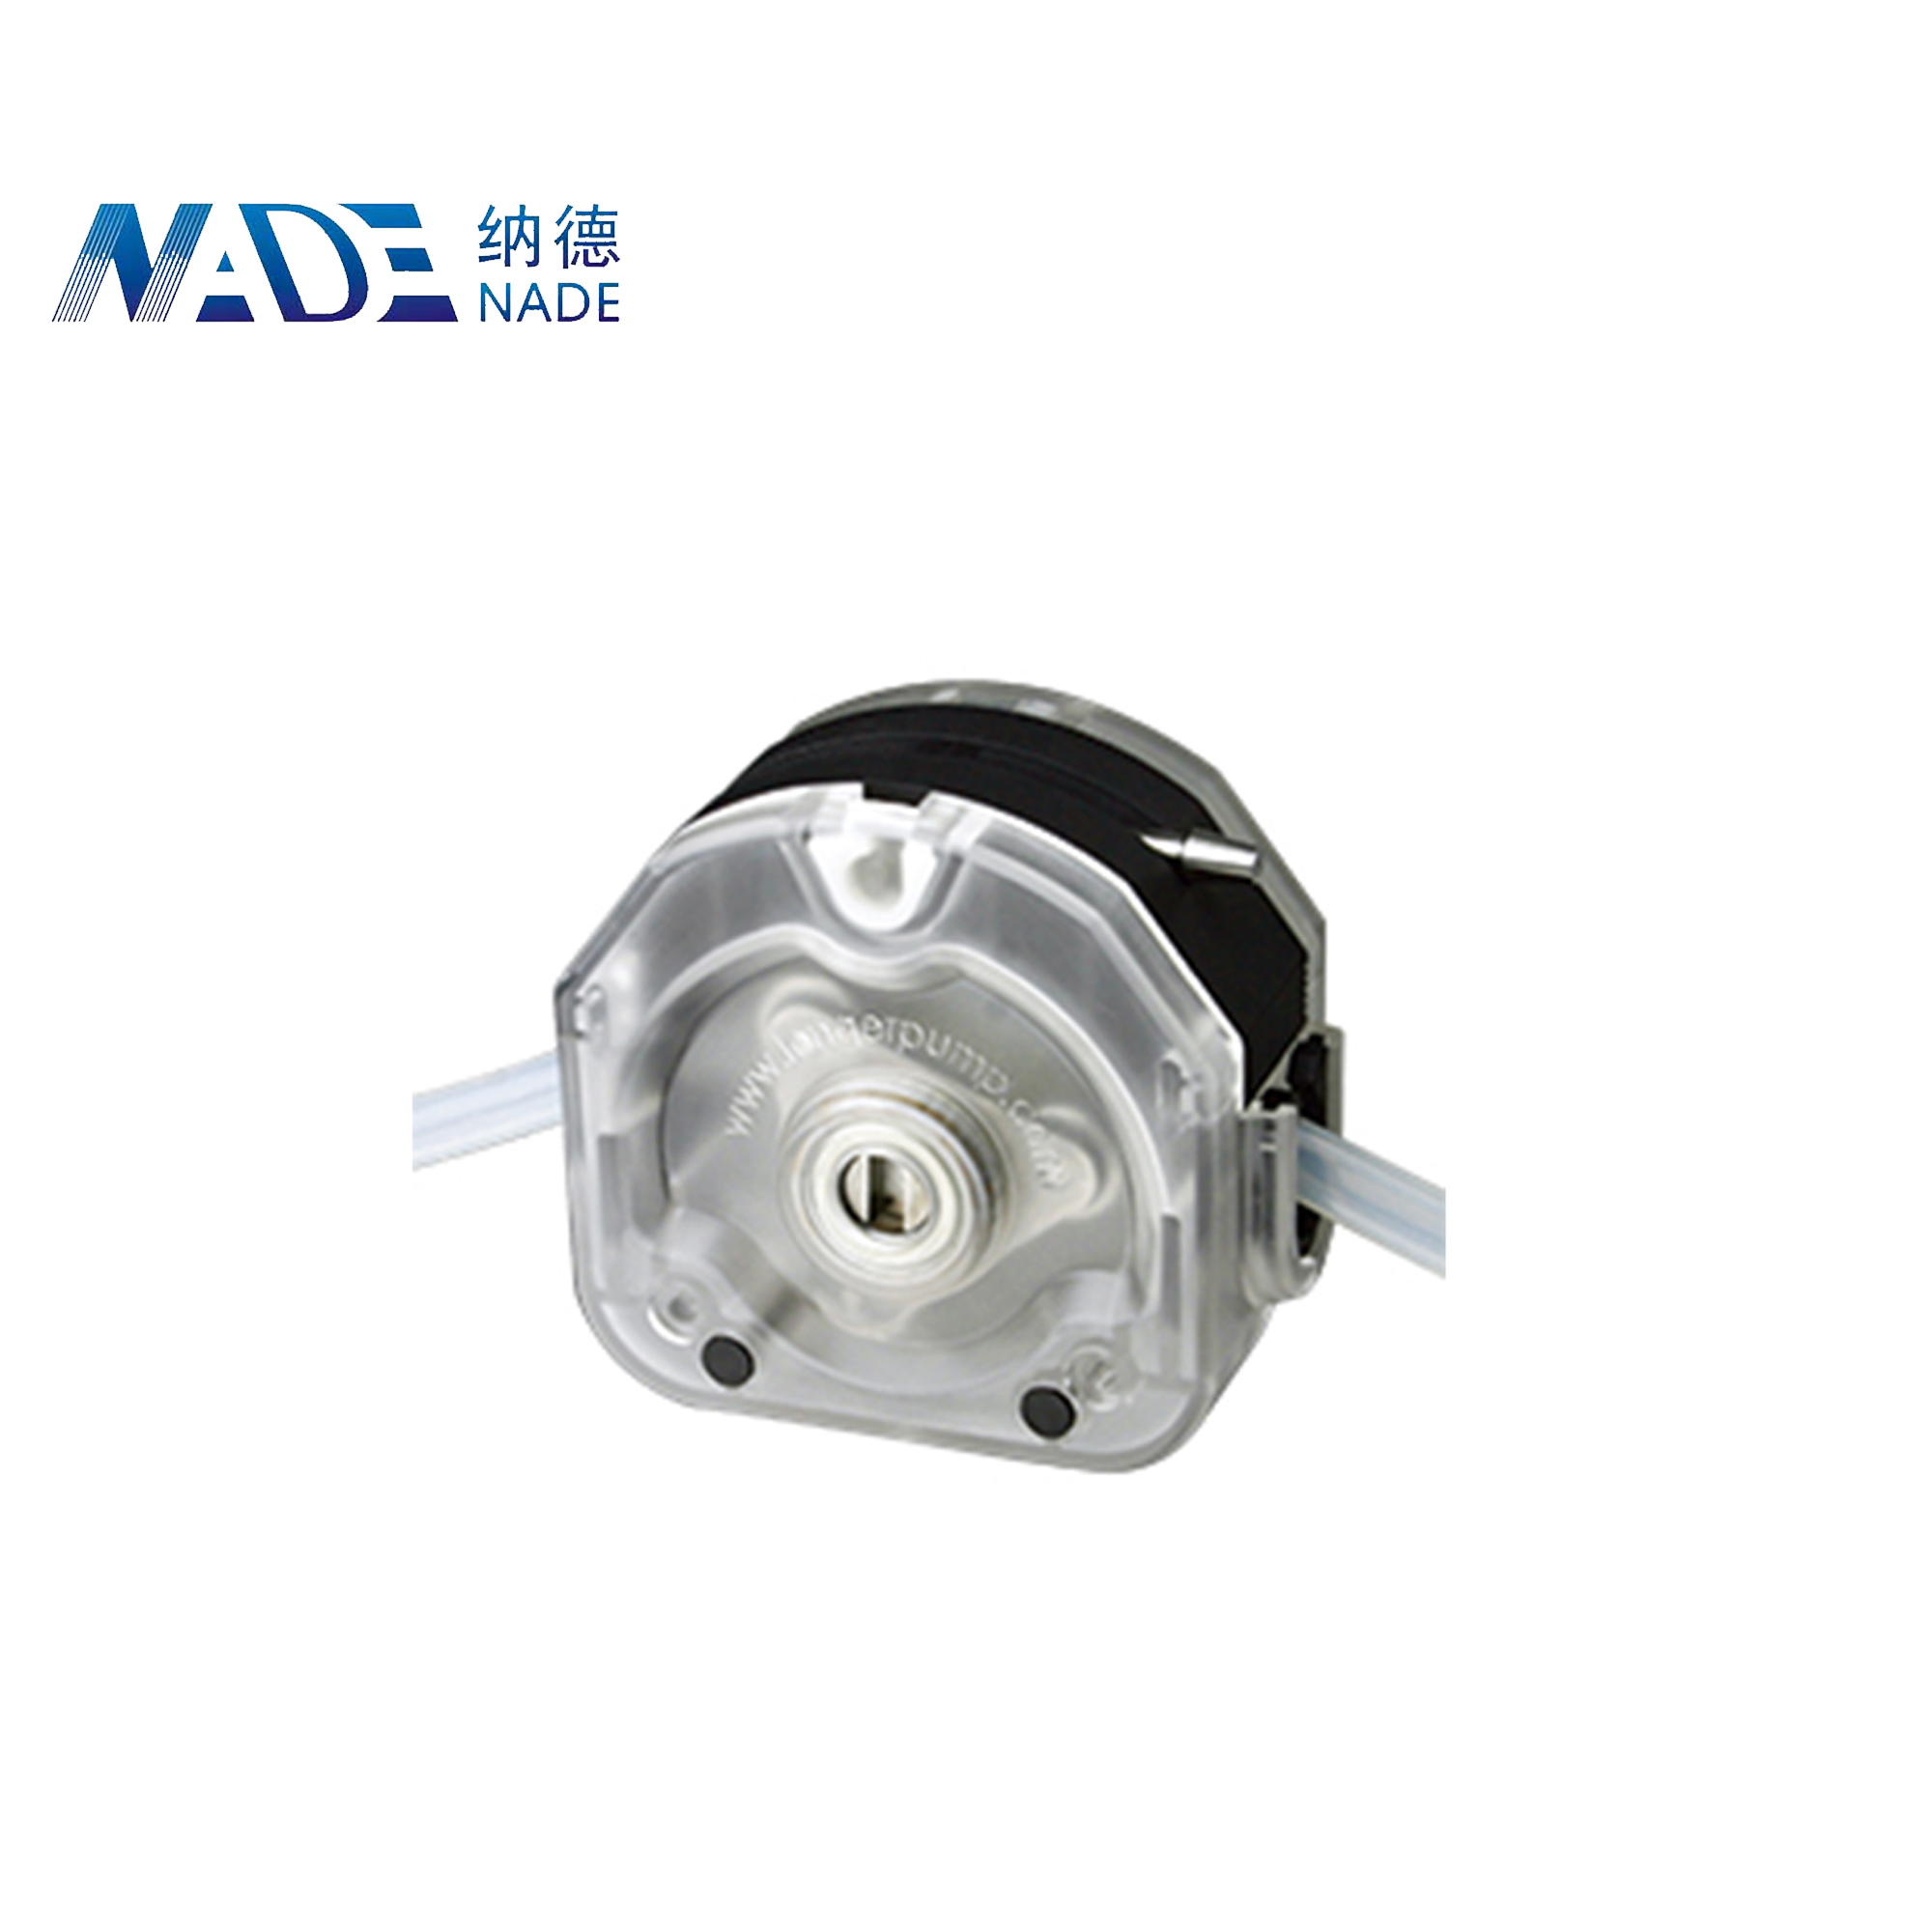 Nade Peristaltic pump Head KZ25-13 0-6000ml/min